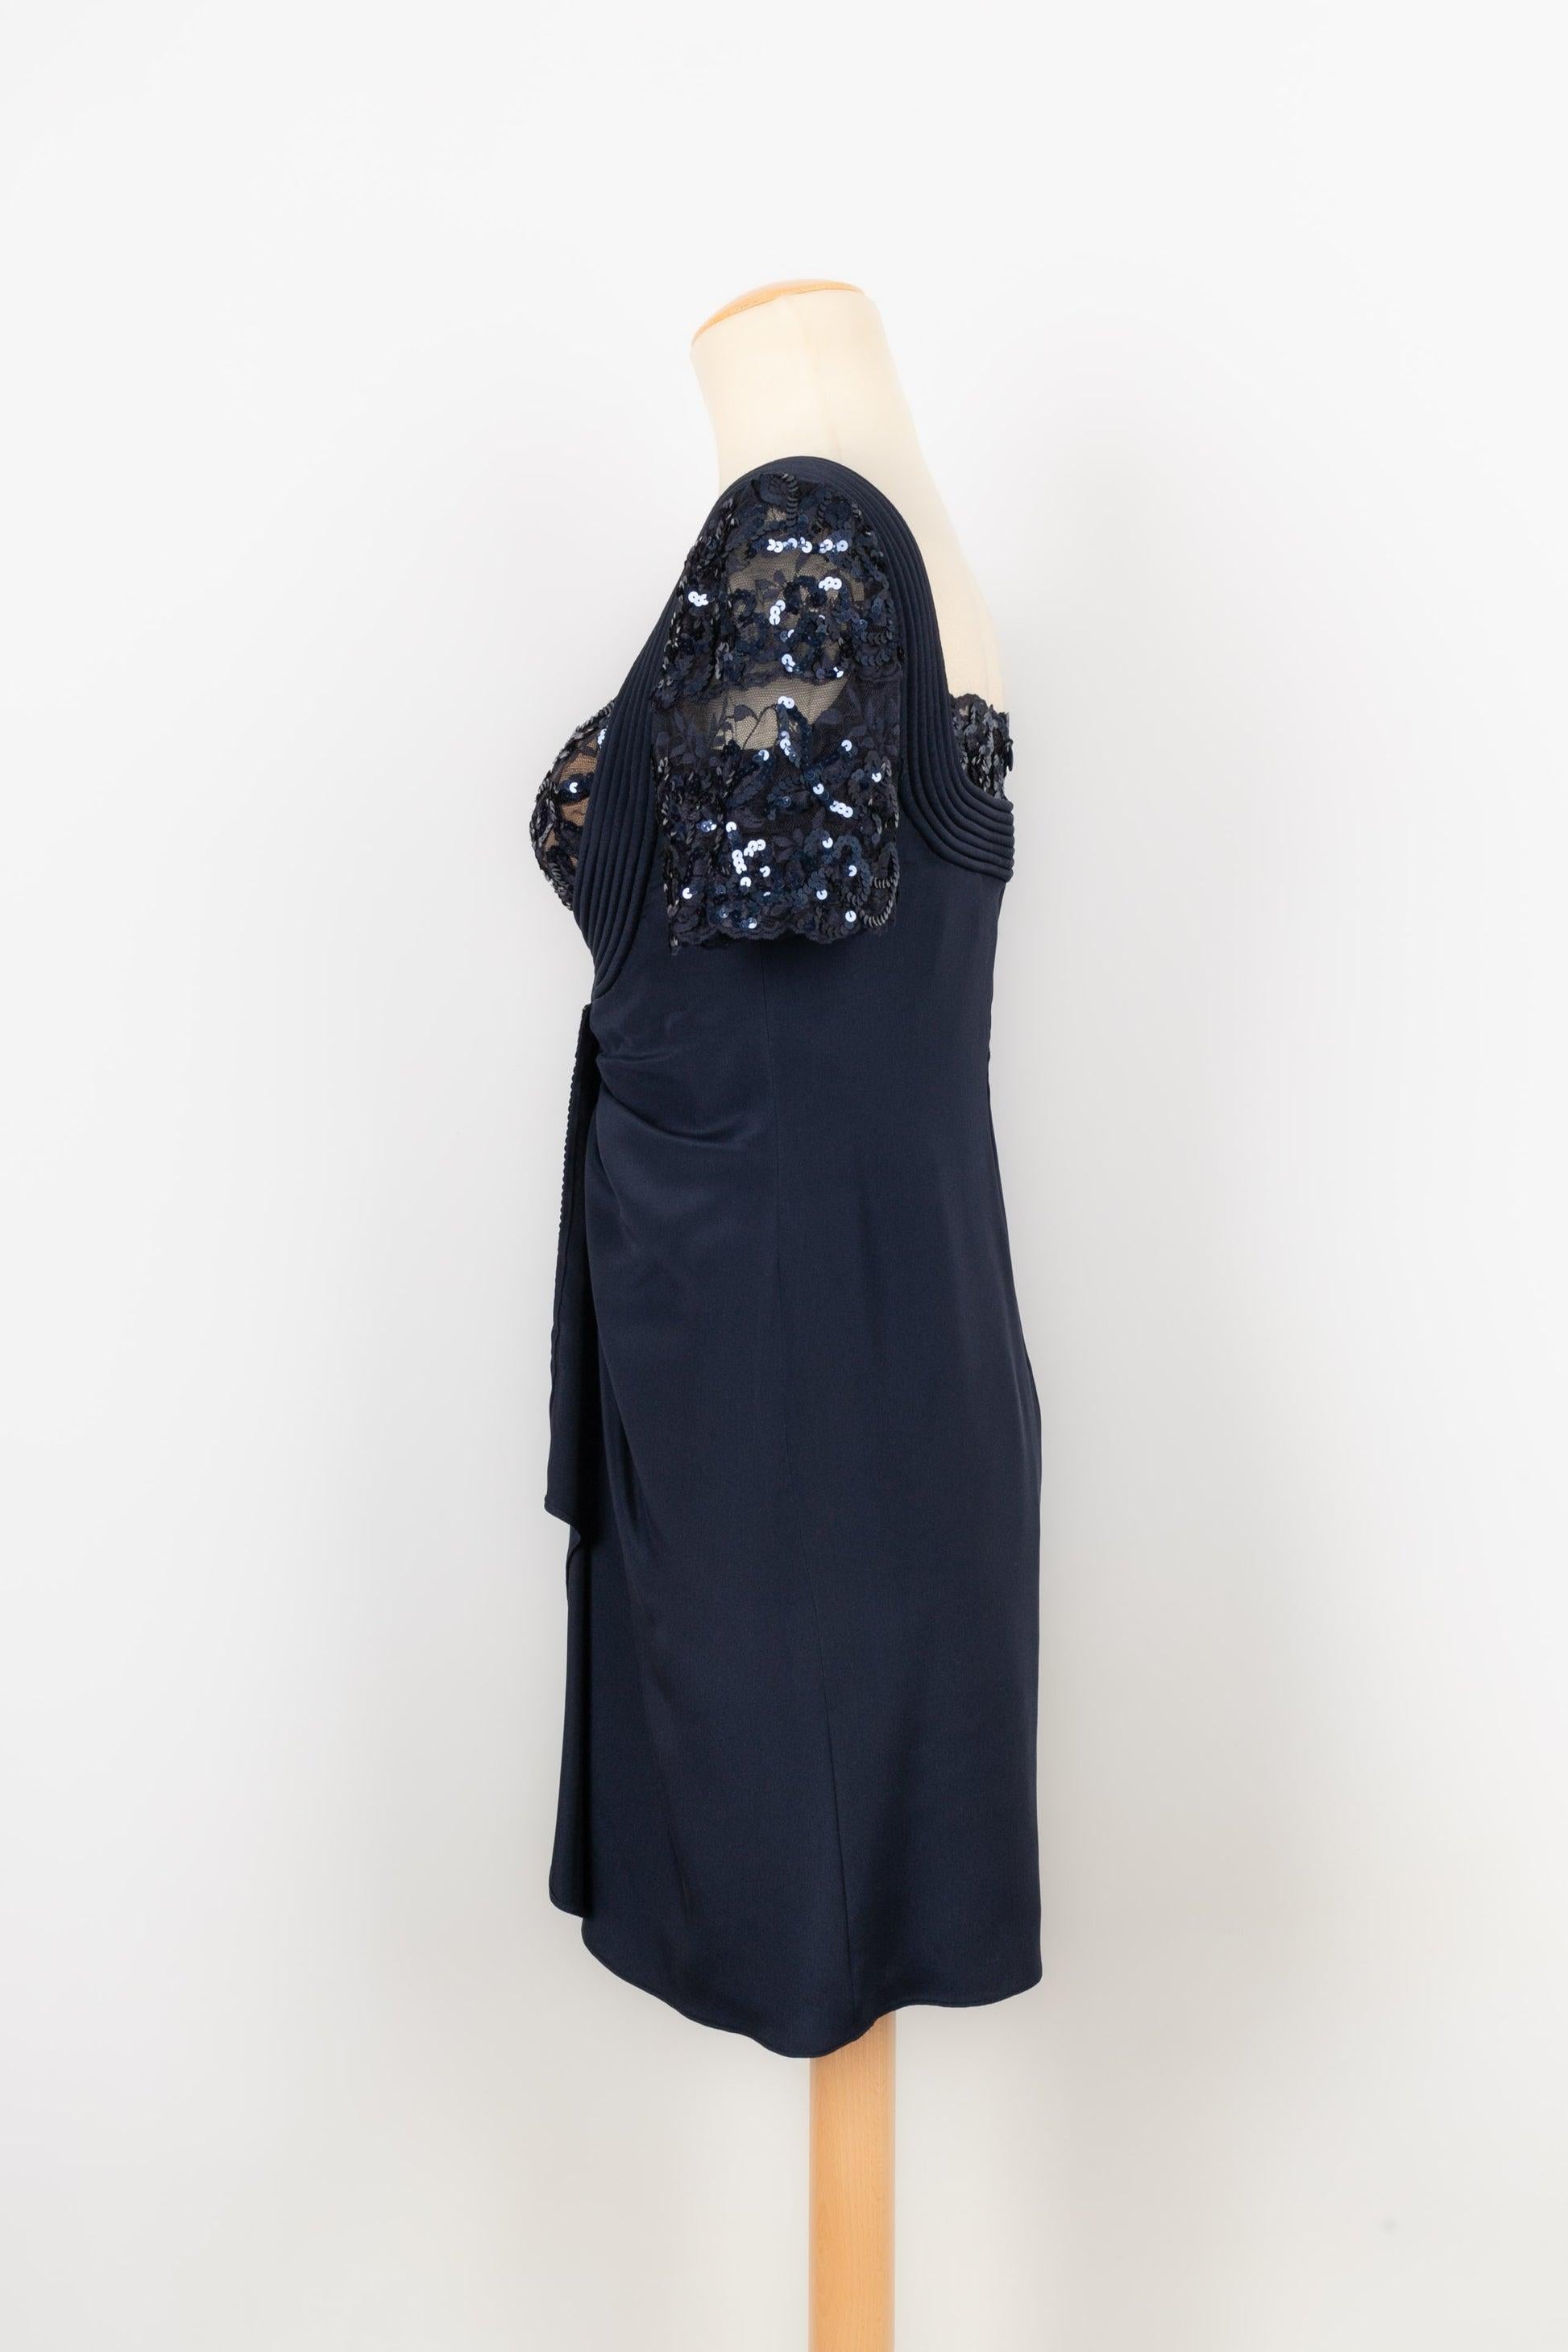 Loris Azzaro Mitternachtsblaues Abendkleid aus Taft, Spitze und Pailletten Damen im Angebot